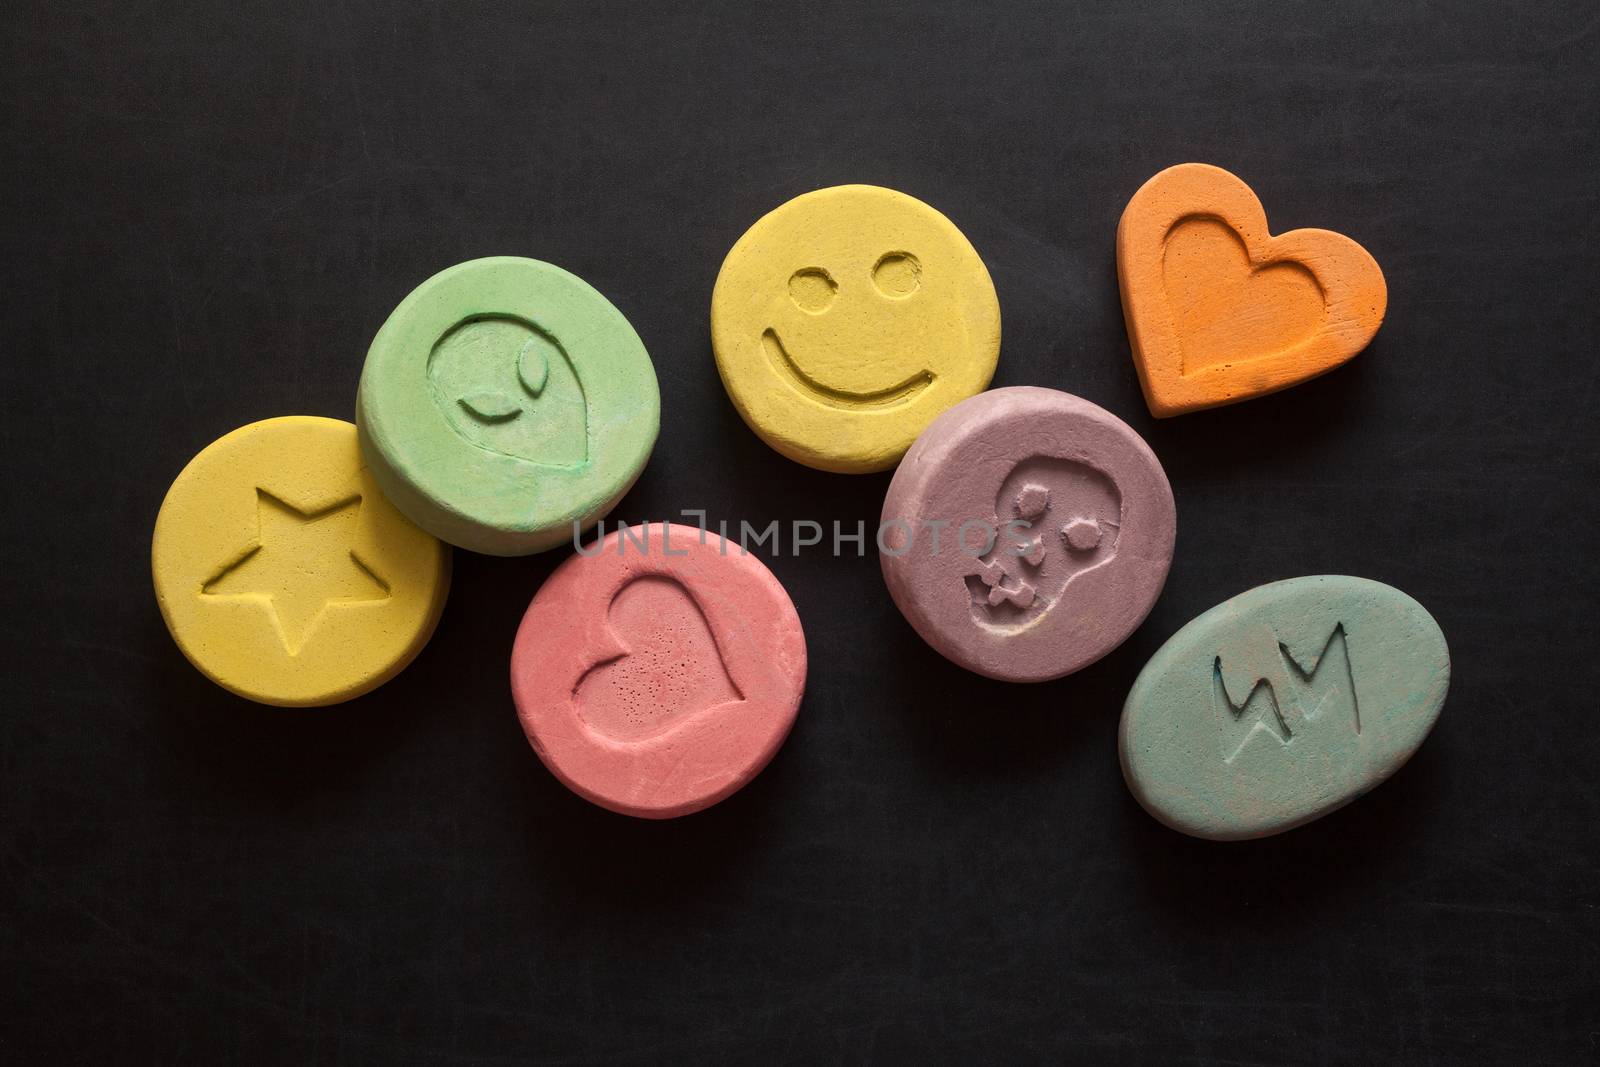 Ecstasy pills by Portokalis